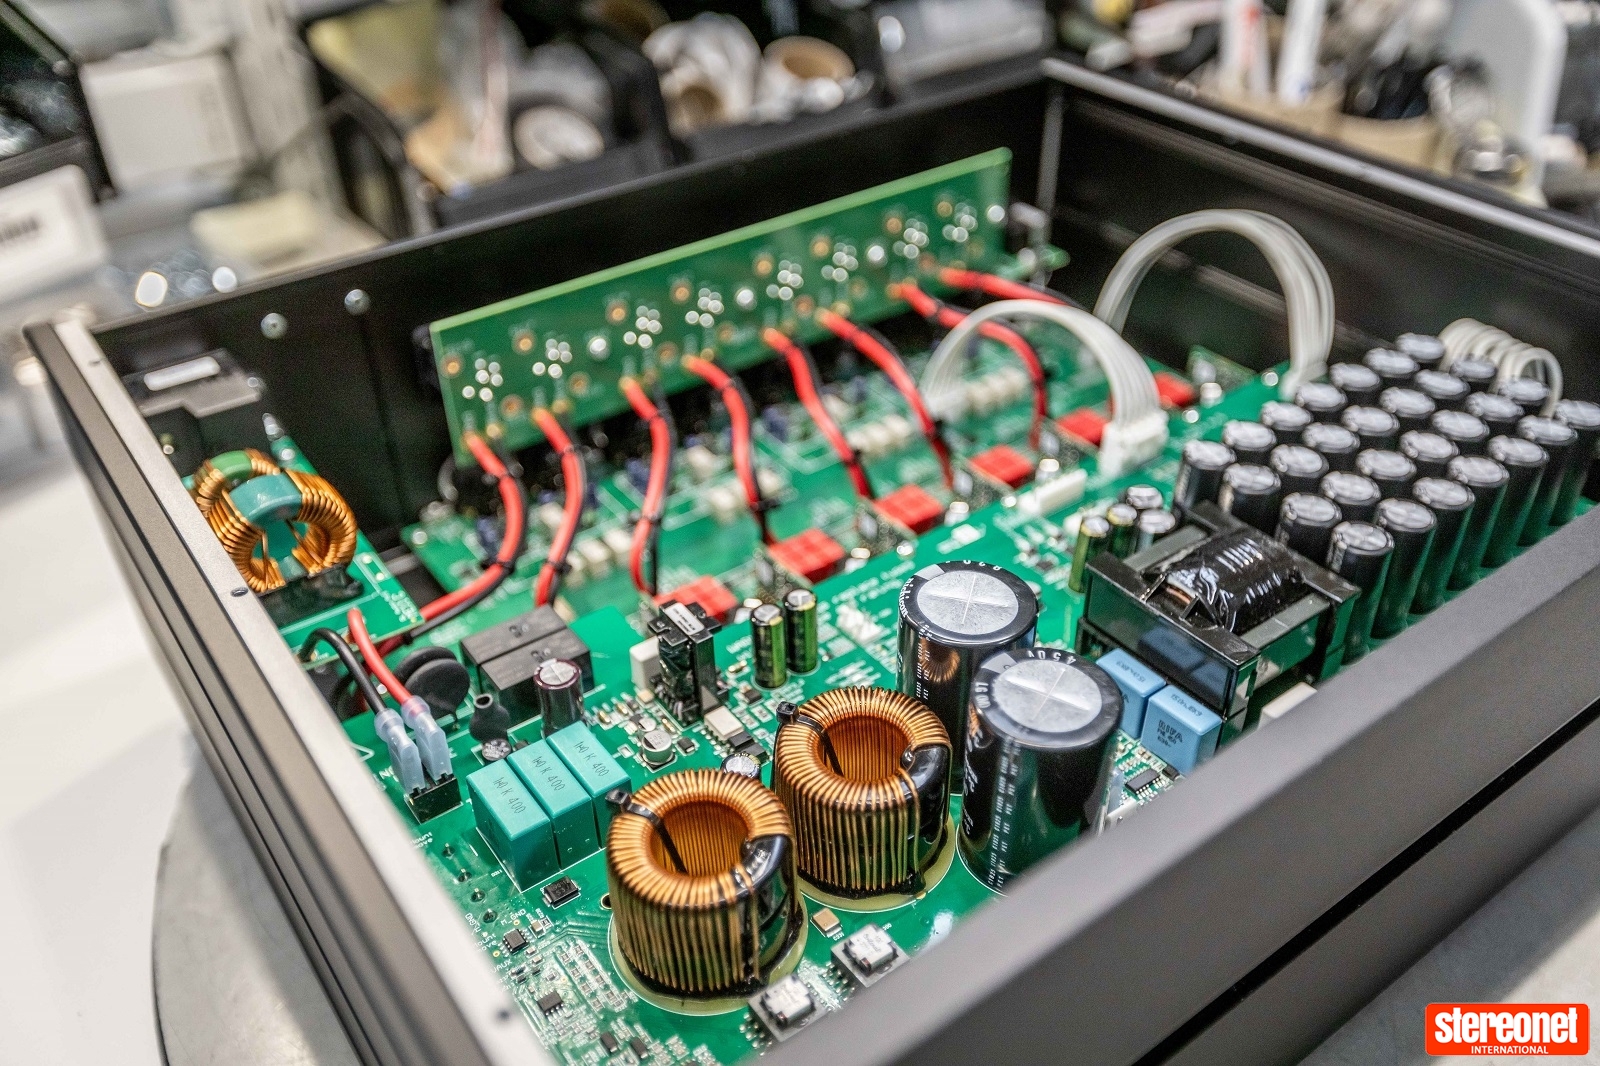 Lyngdorf MXA-8400 amplifier